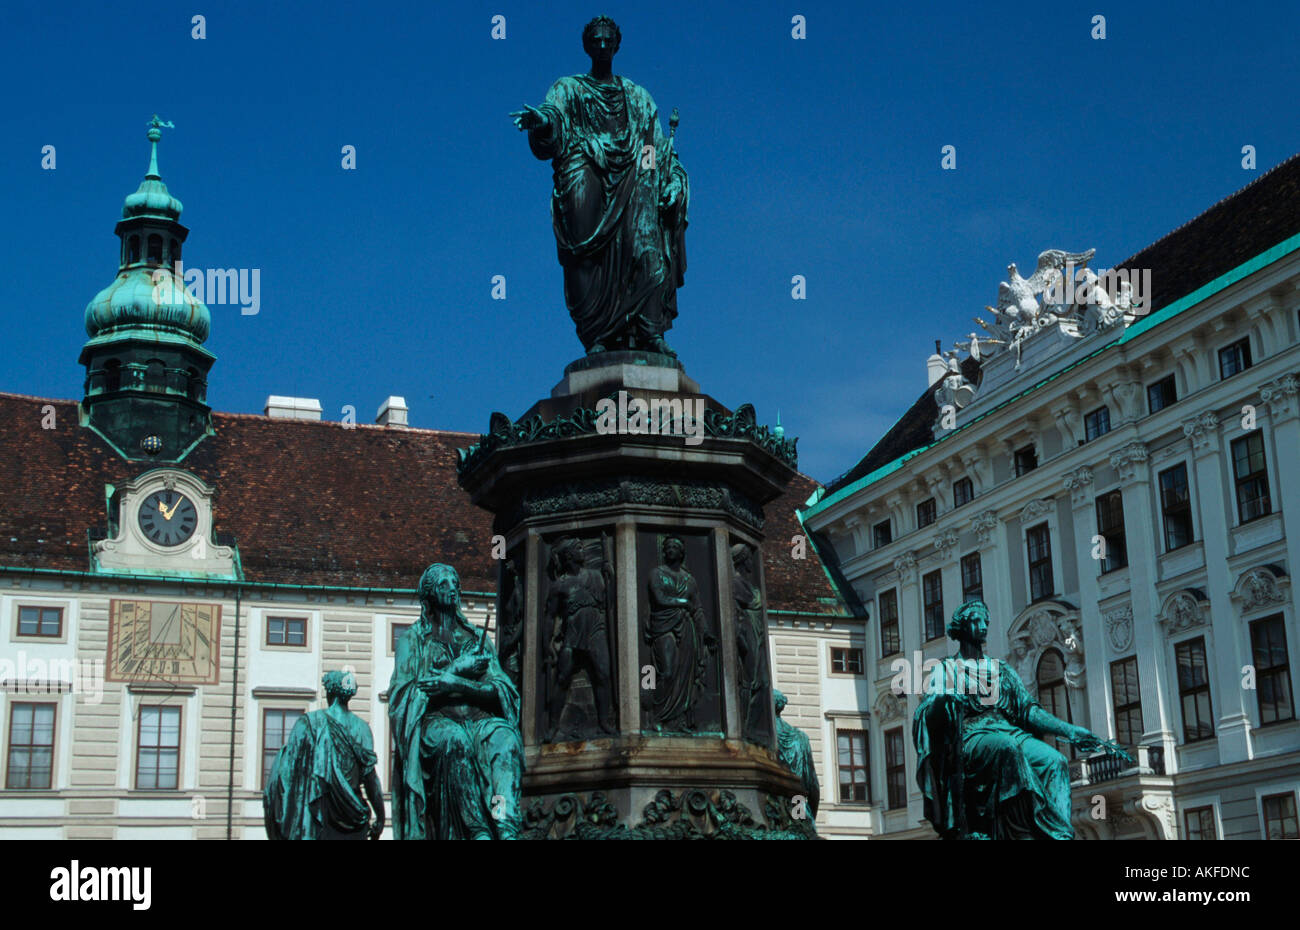 Wien, viscerale Burghof (Amalienhof) astronomischer Uhr auf Amalientrakt und Bronzestandbild von Kaiser Franz I. Foto Stock